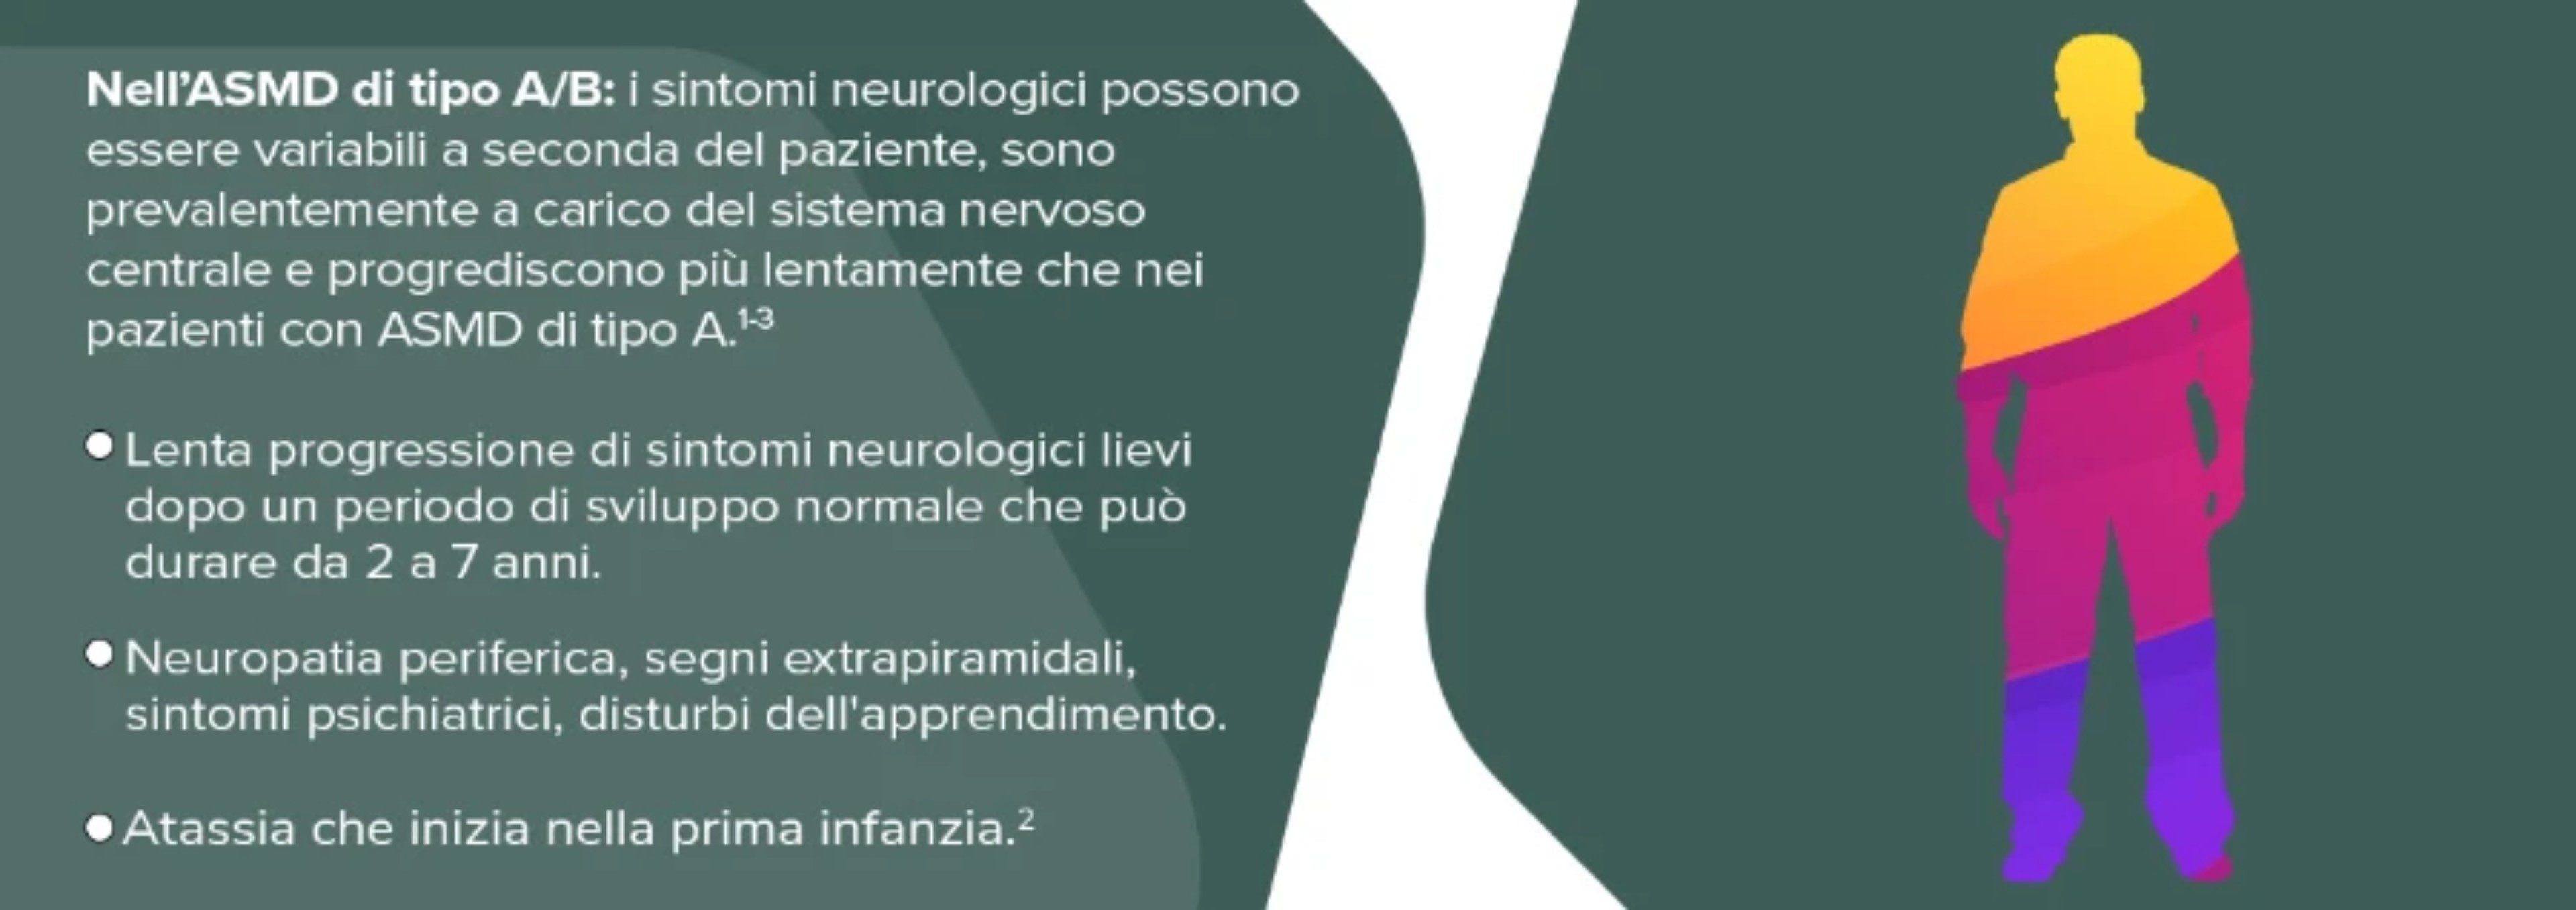 coinvolgimento-neurologico-2